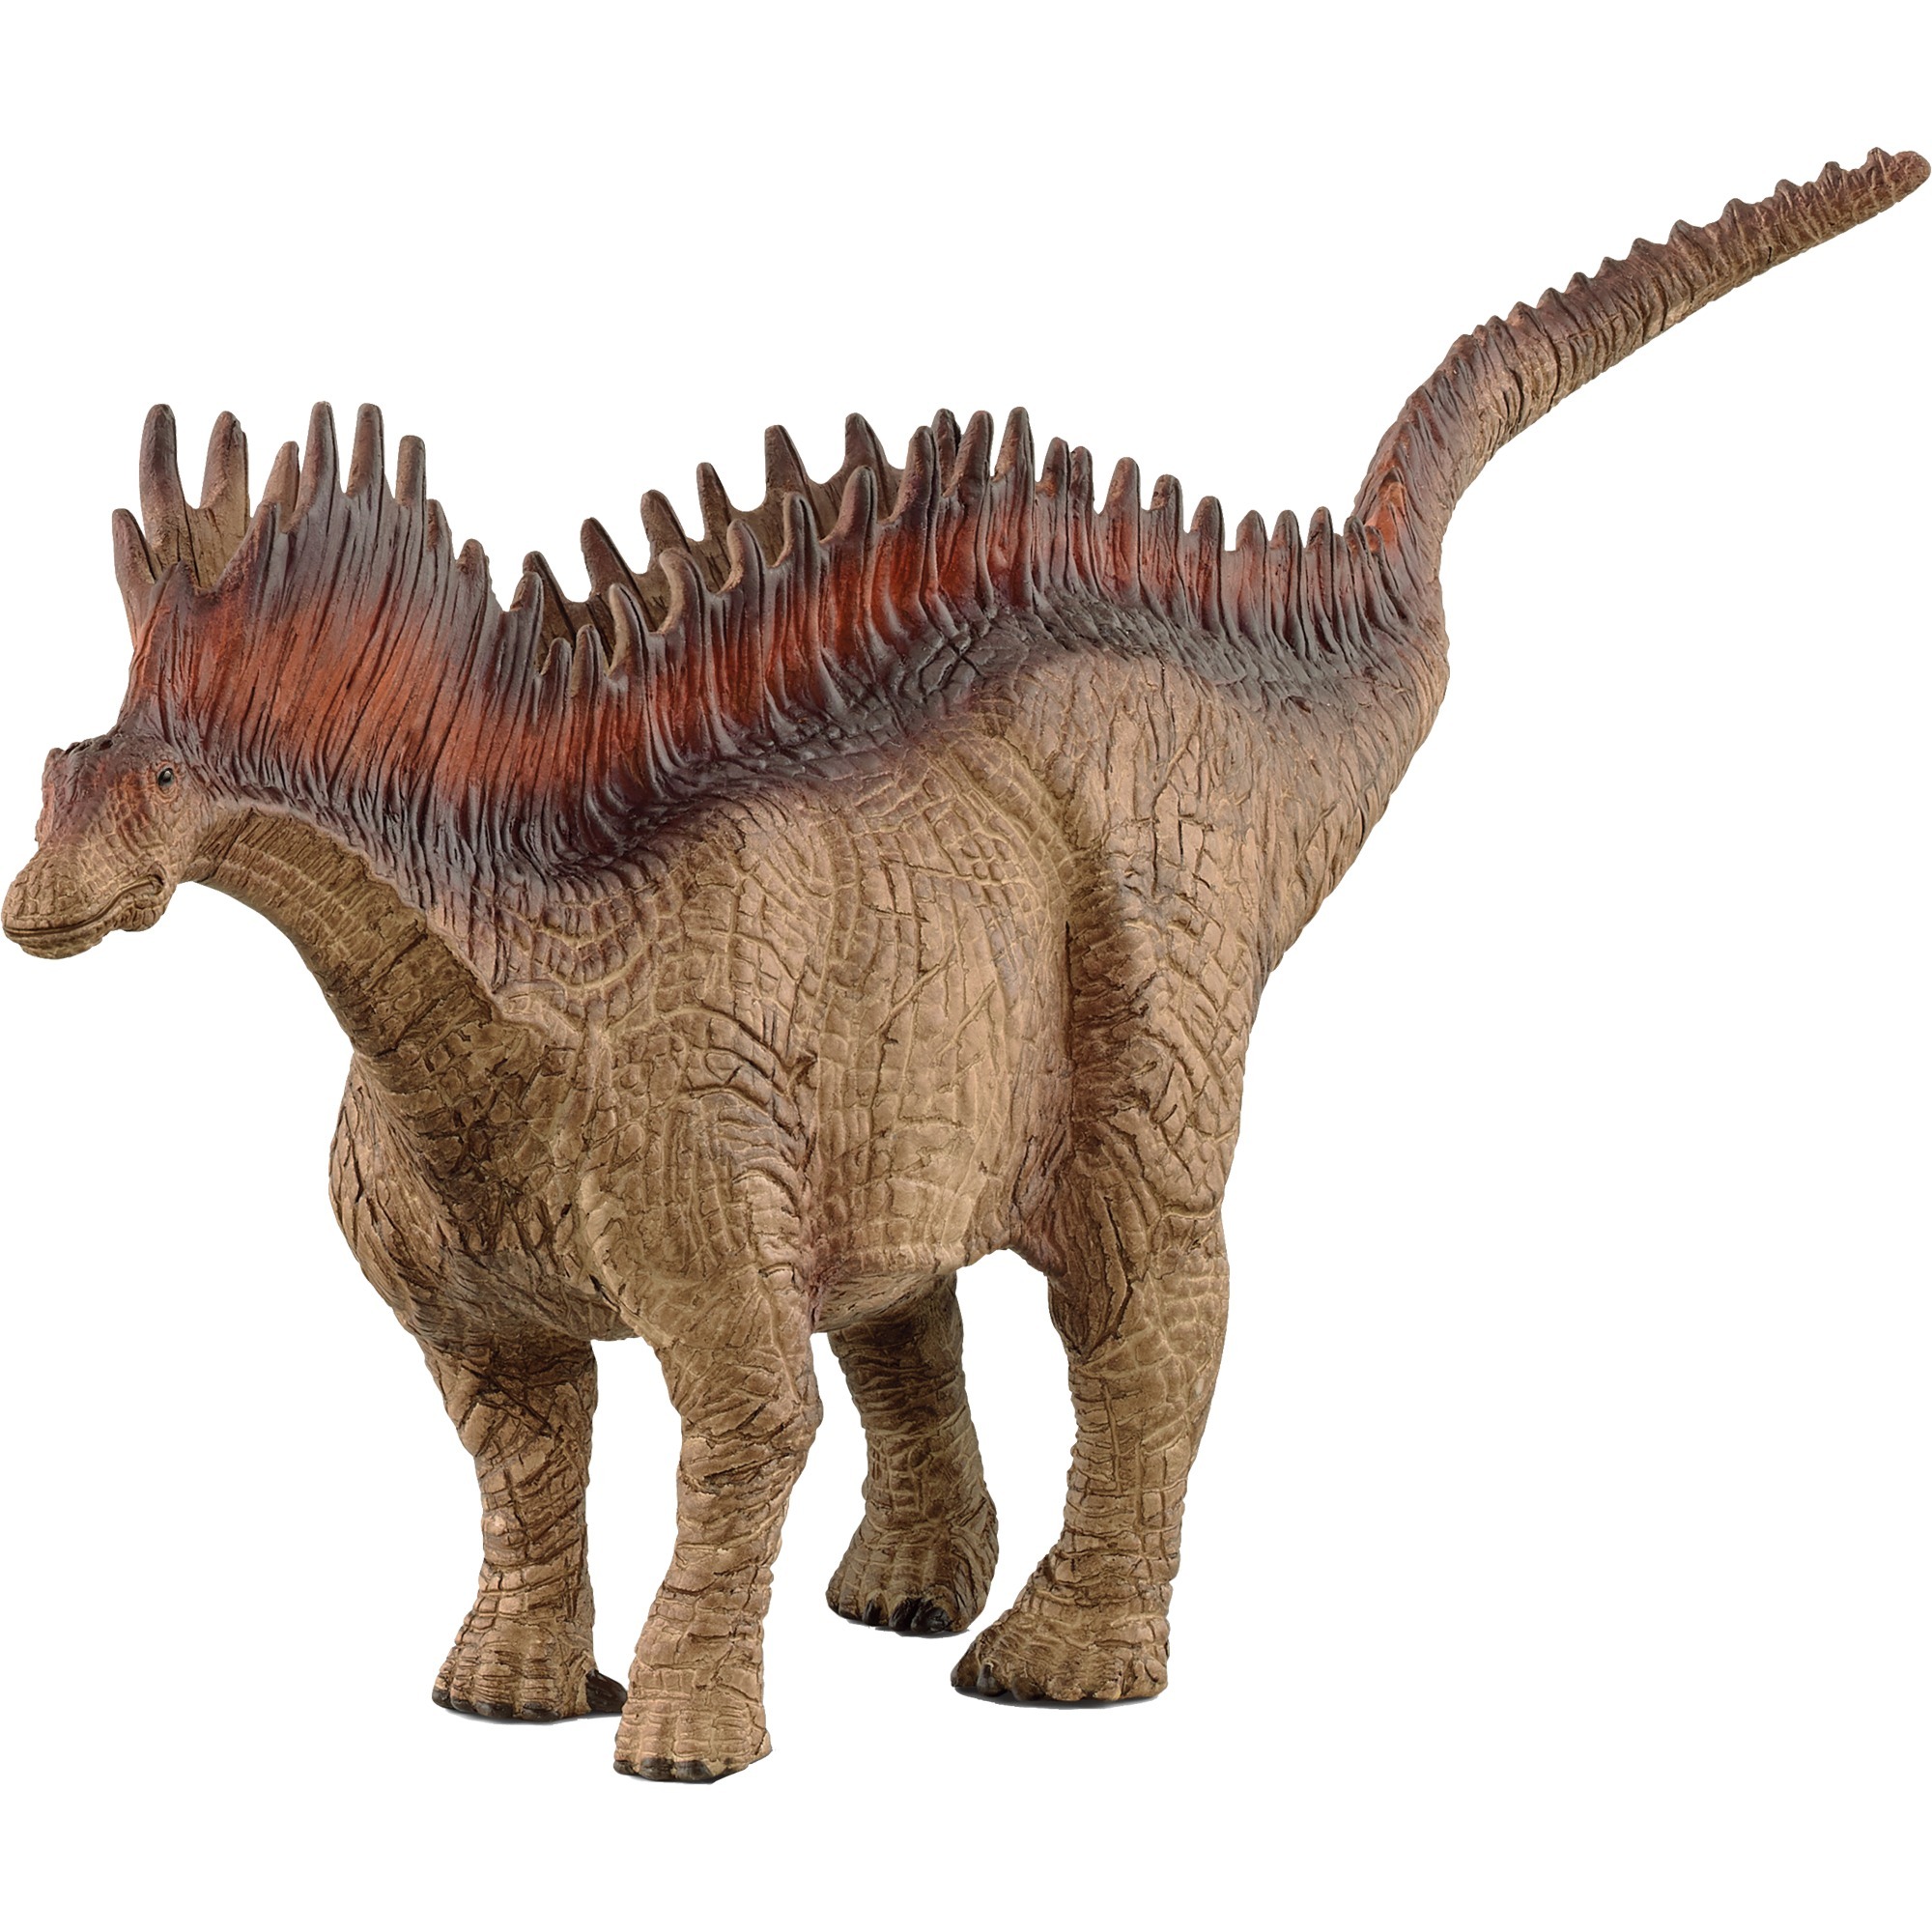 Image of Alternate - Dinosaurs Amargasaurus, Spielfigur online einkaufen bei Alternate